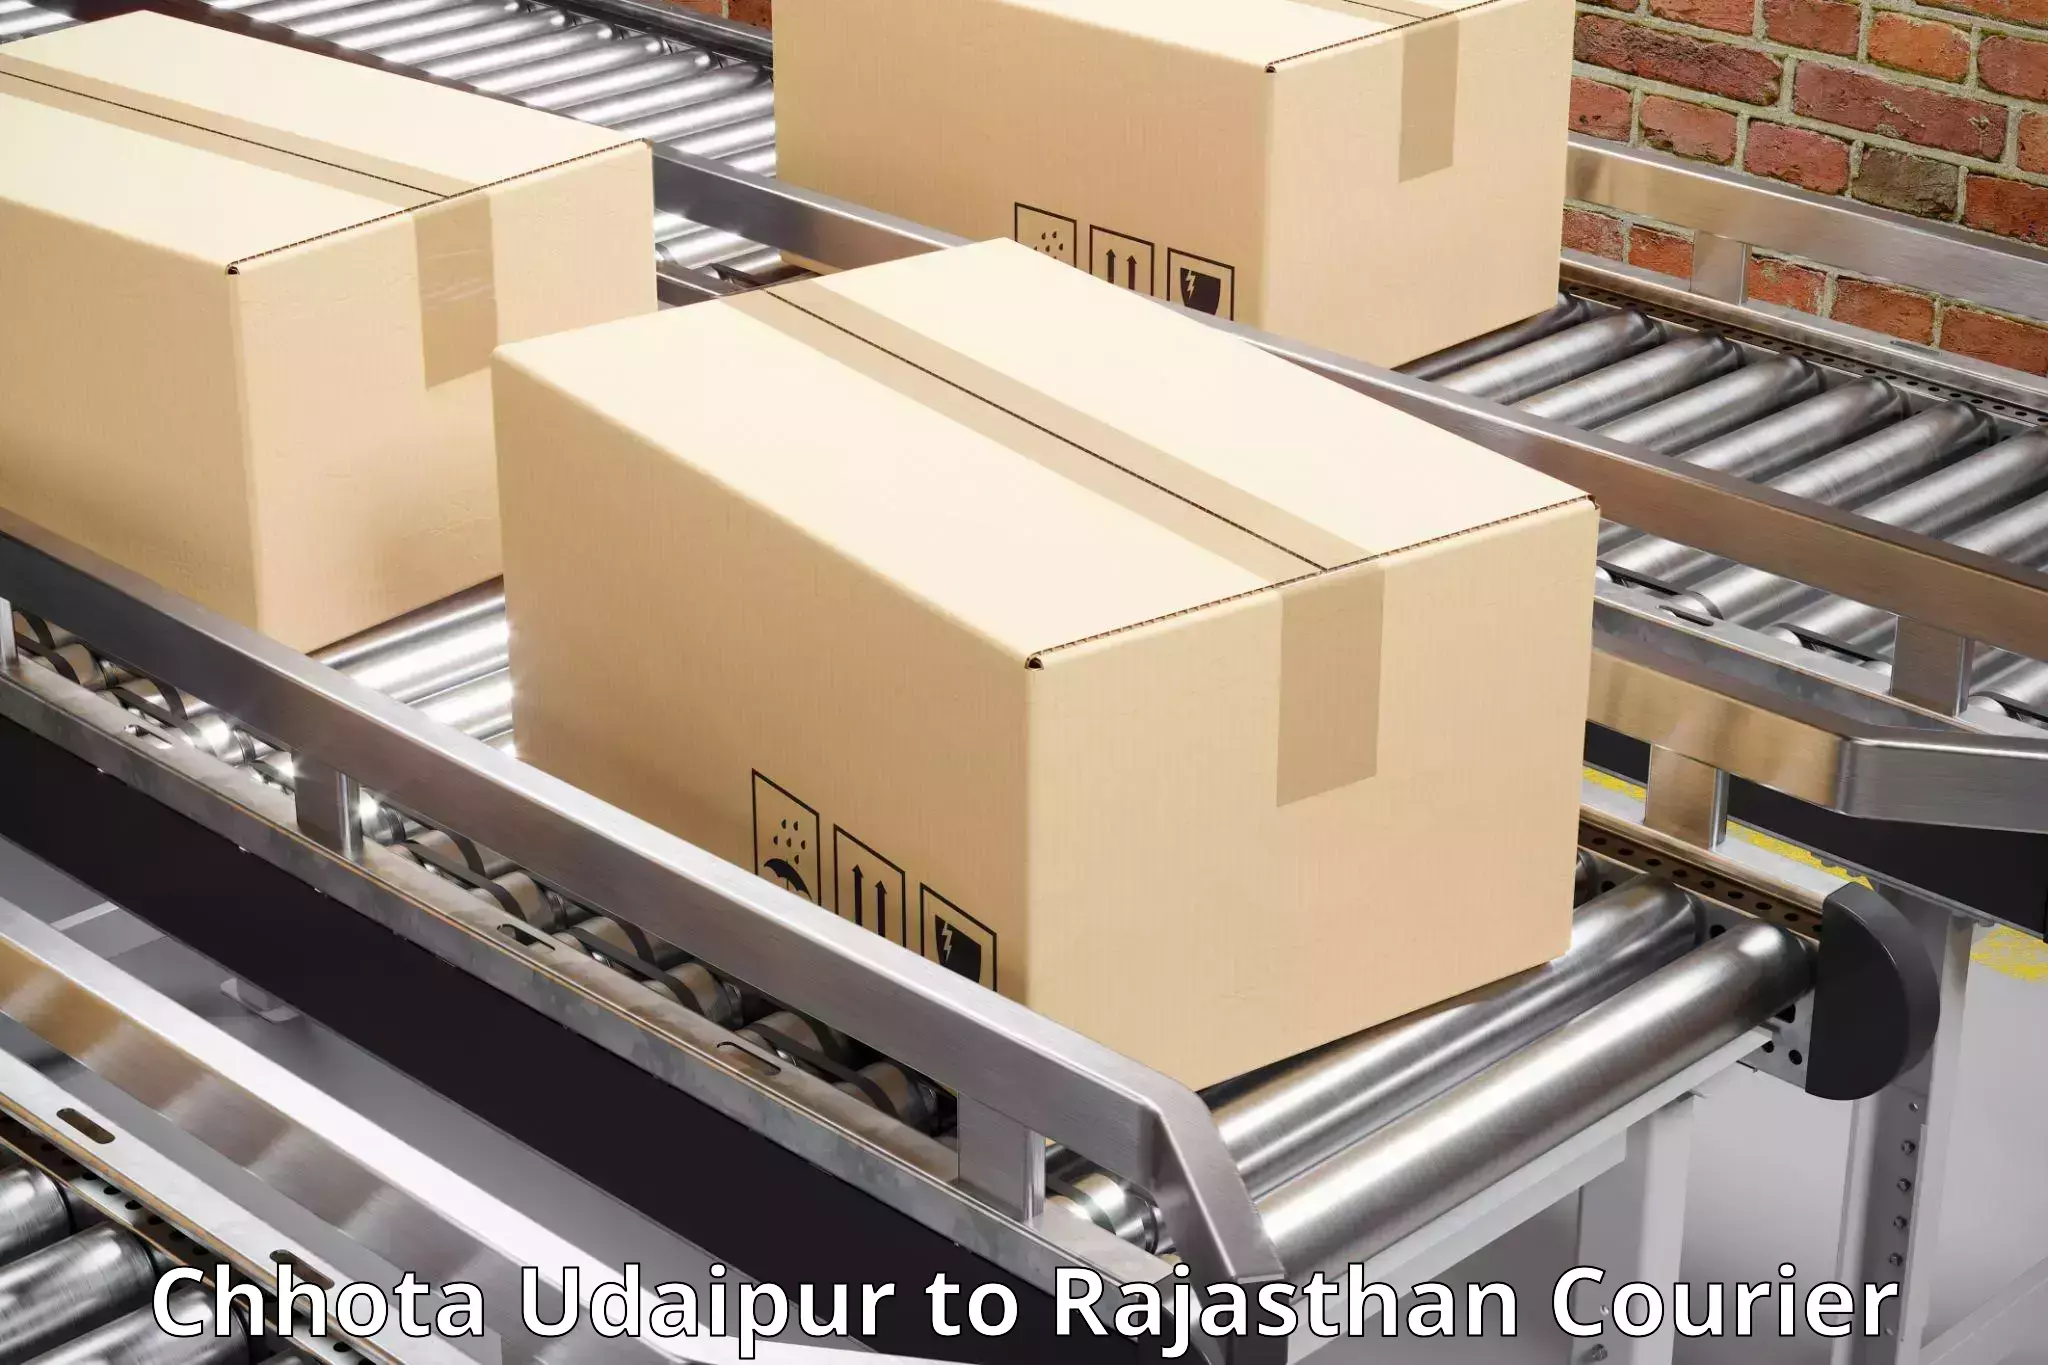 High-capacity parcel service Chhota Udaipur to Khatu Khurd